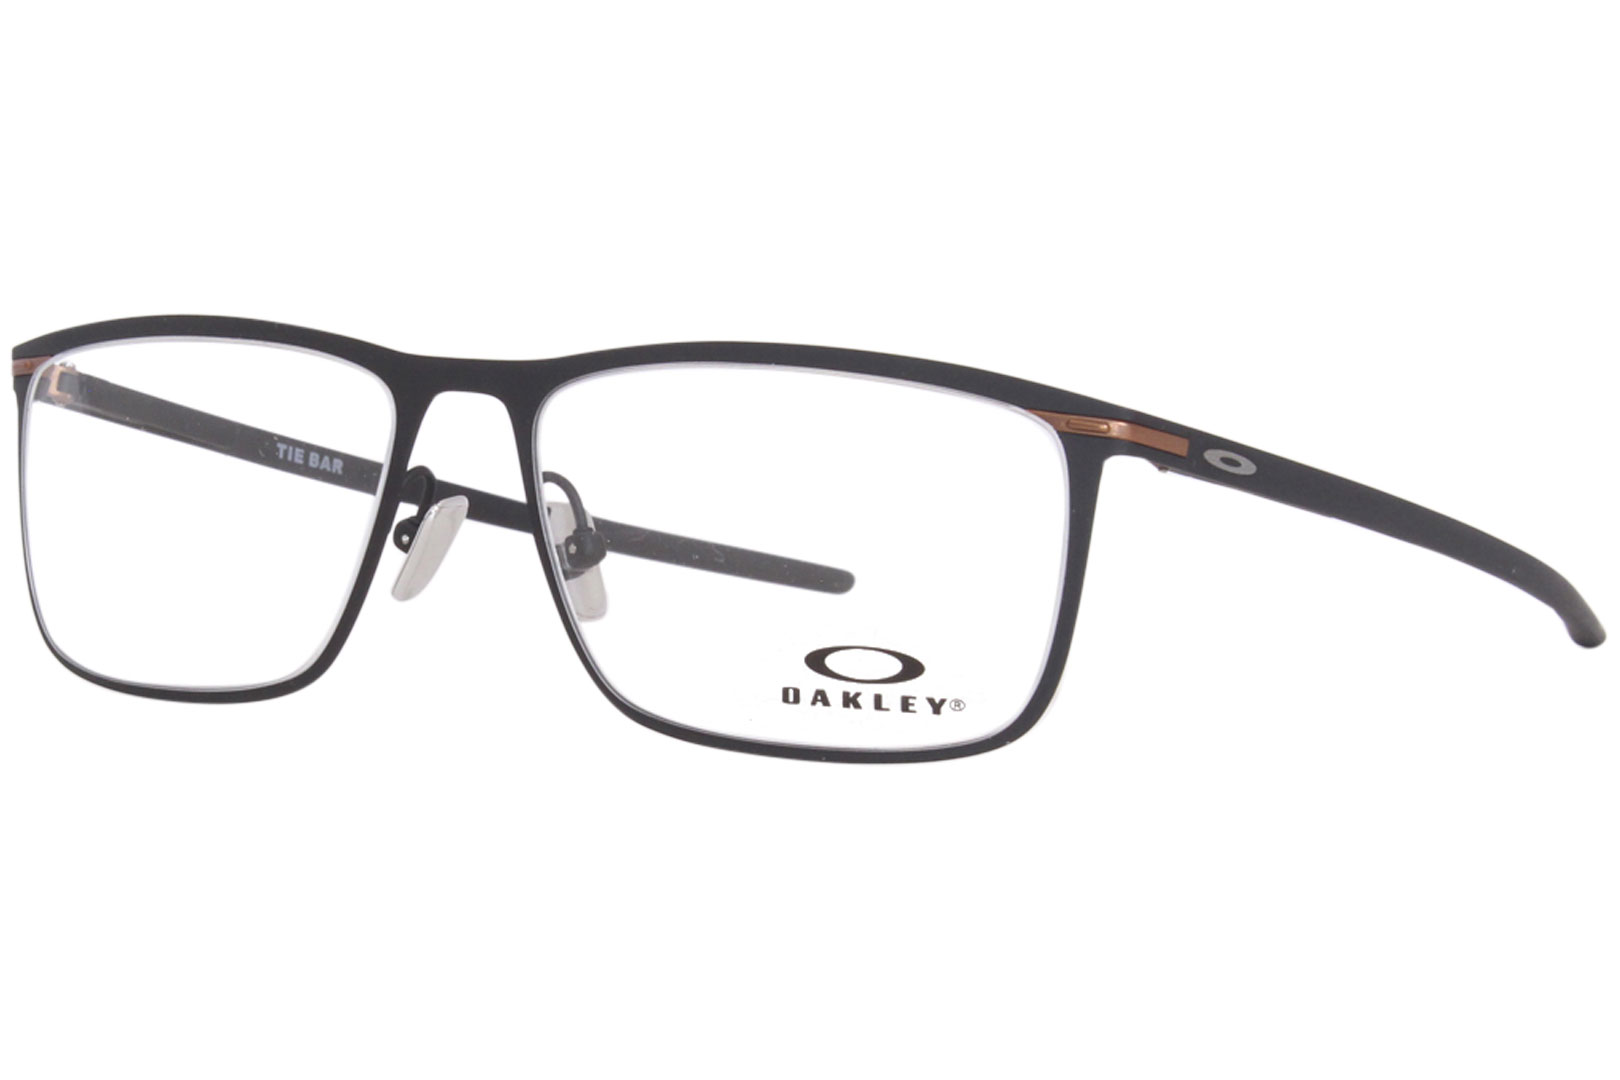 Oakley Tie-Bar OX5138 Eyeglasses Men's Full Rim Rectangular Optical Frame |  